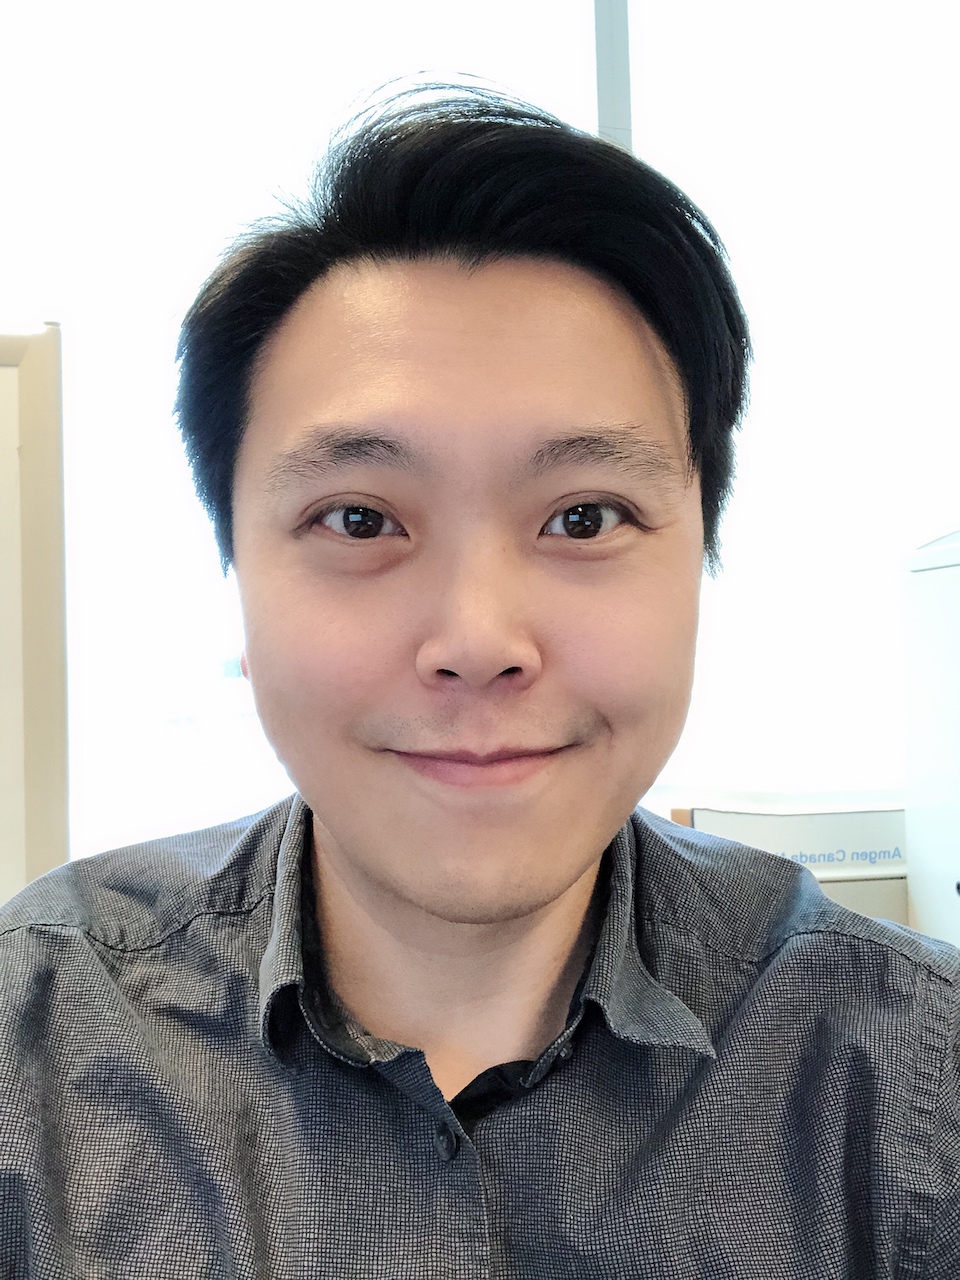 Leon Lee | Analyste en chef associé de l'informatique pour Amgen